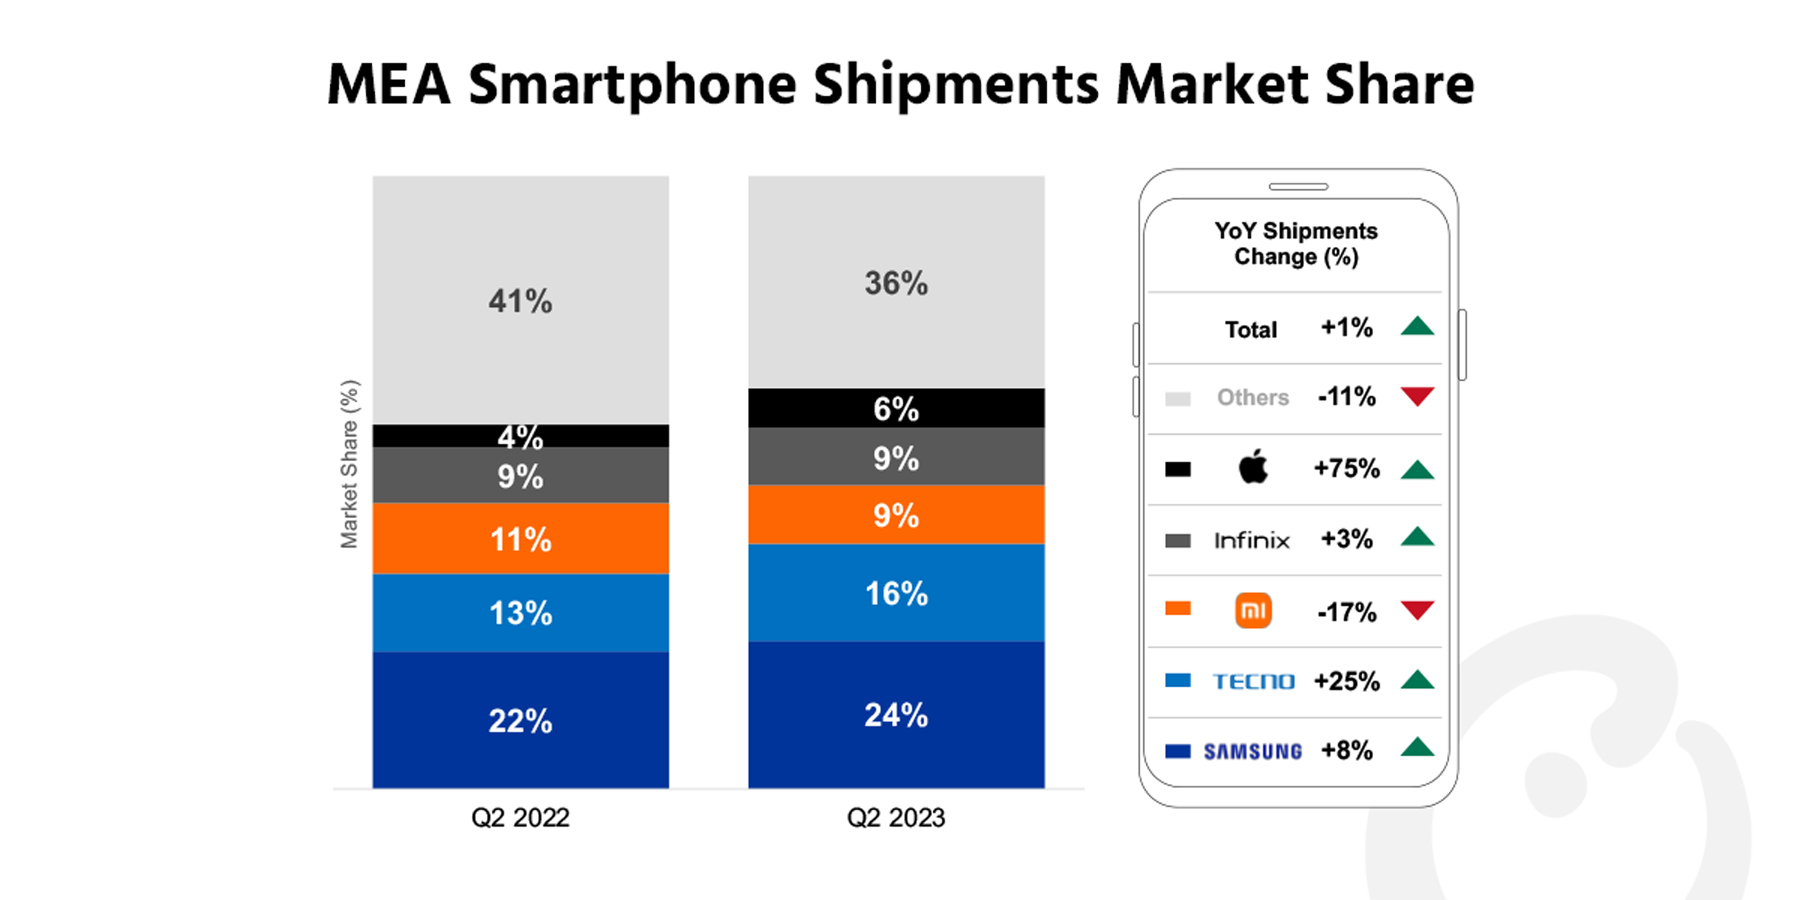 意味着Smartphone Shipments Rebound in Q2 2023 on Better Macroeconomic Environment